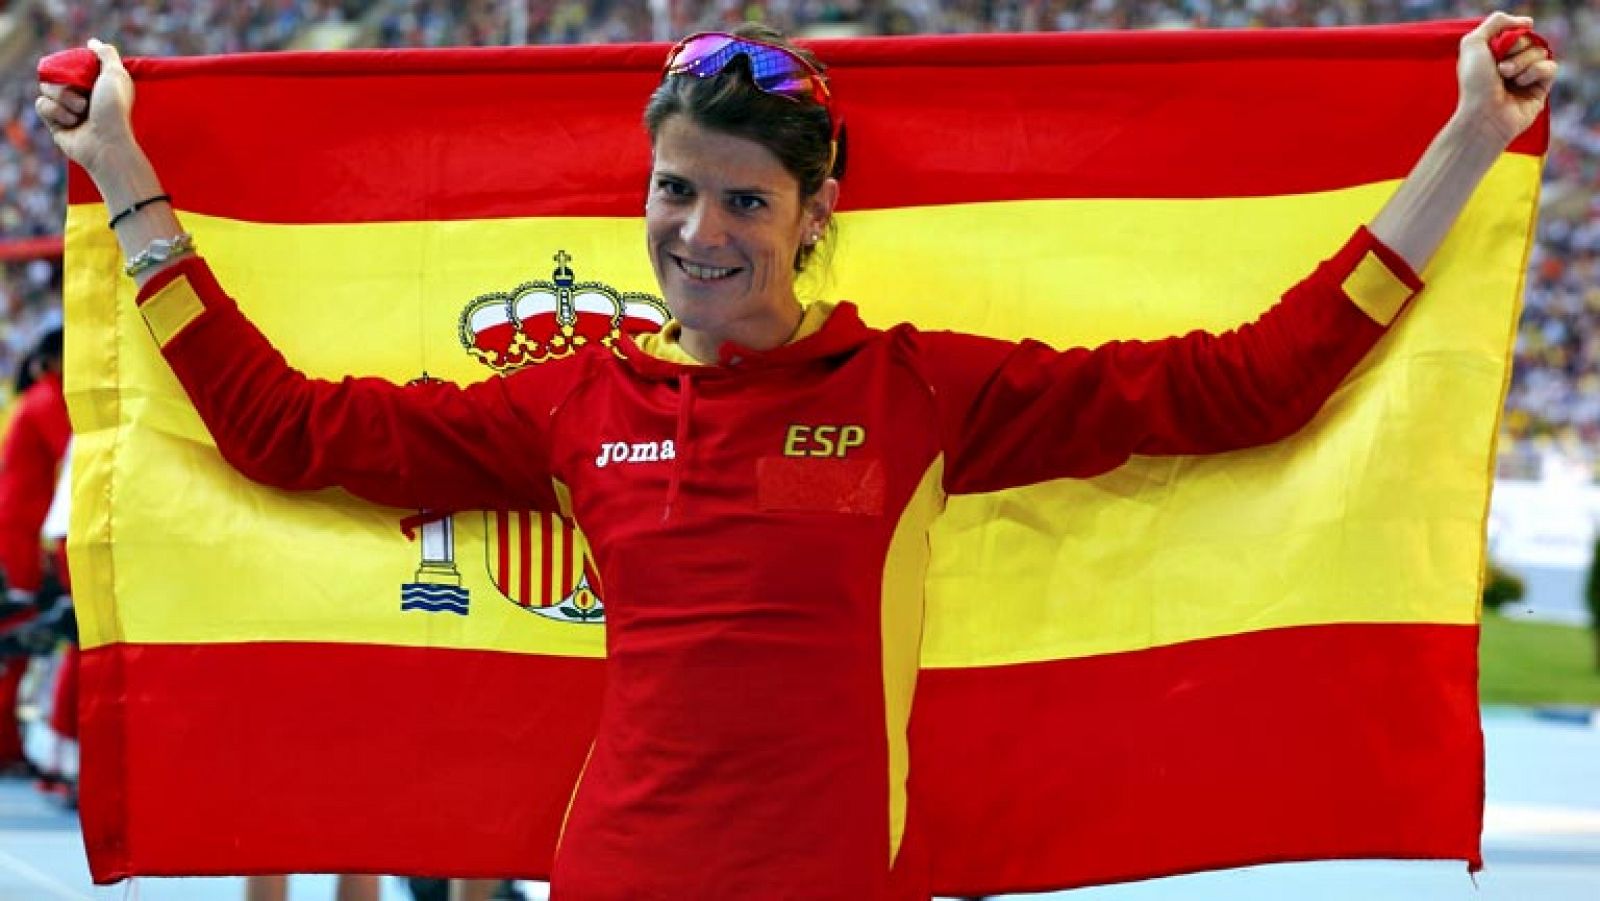 La penúltima jornada del Campeonato del Mundo de atletismo dio la  segunda medalla para el palmarés español, gracias a la gran final de  la cántabra Ruth Beitia, que compartió medalla de bronce con la rusa  Anna Chicherova, mientras que Usain Bolt no